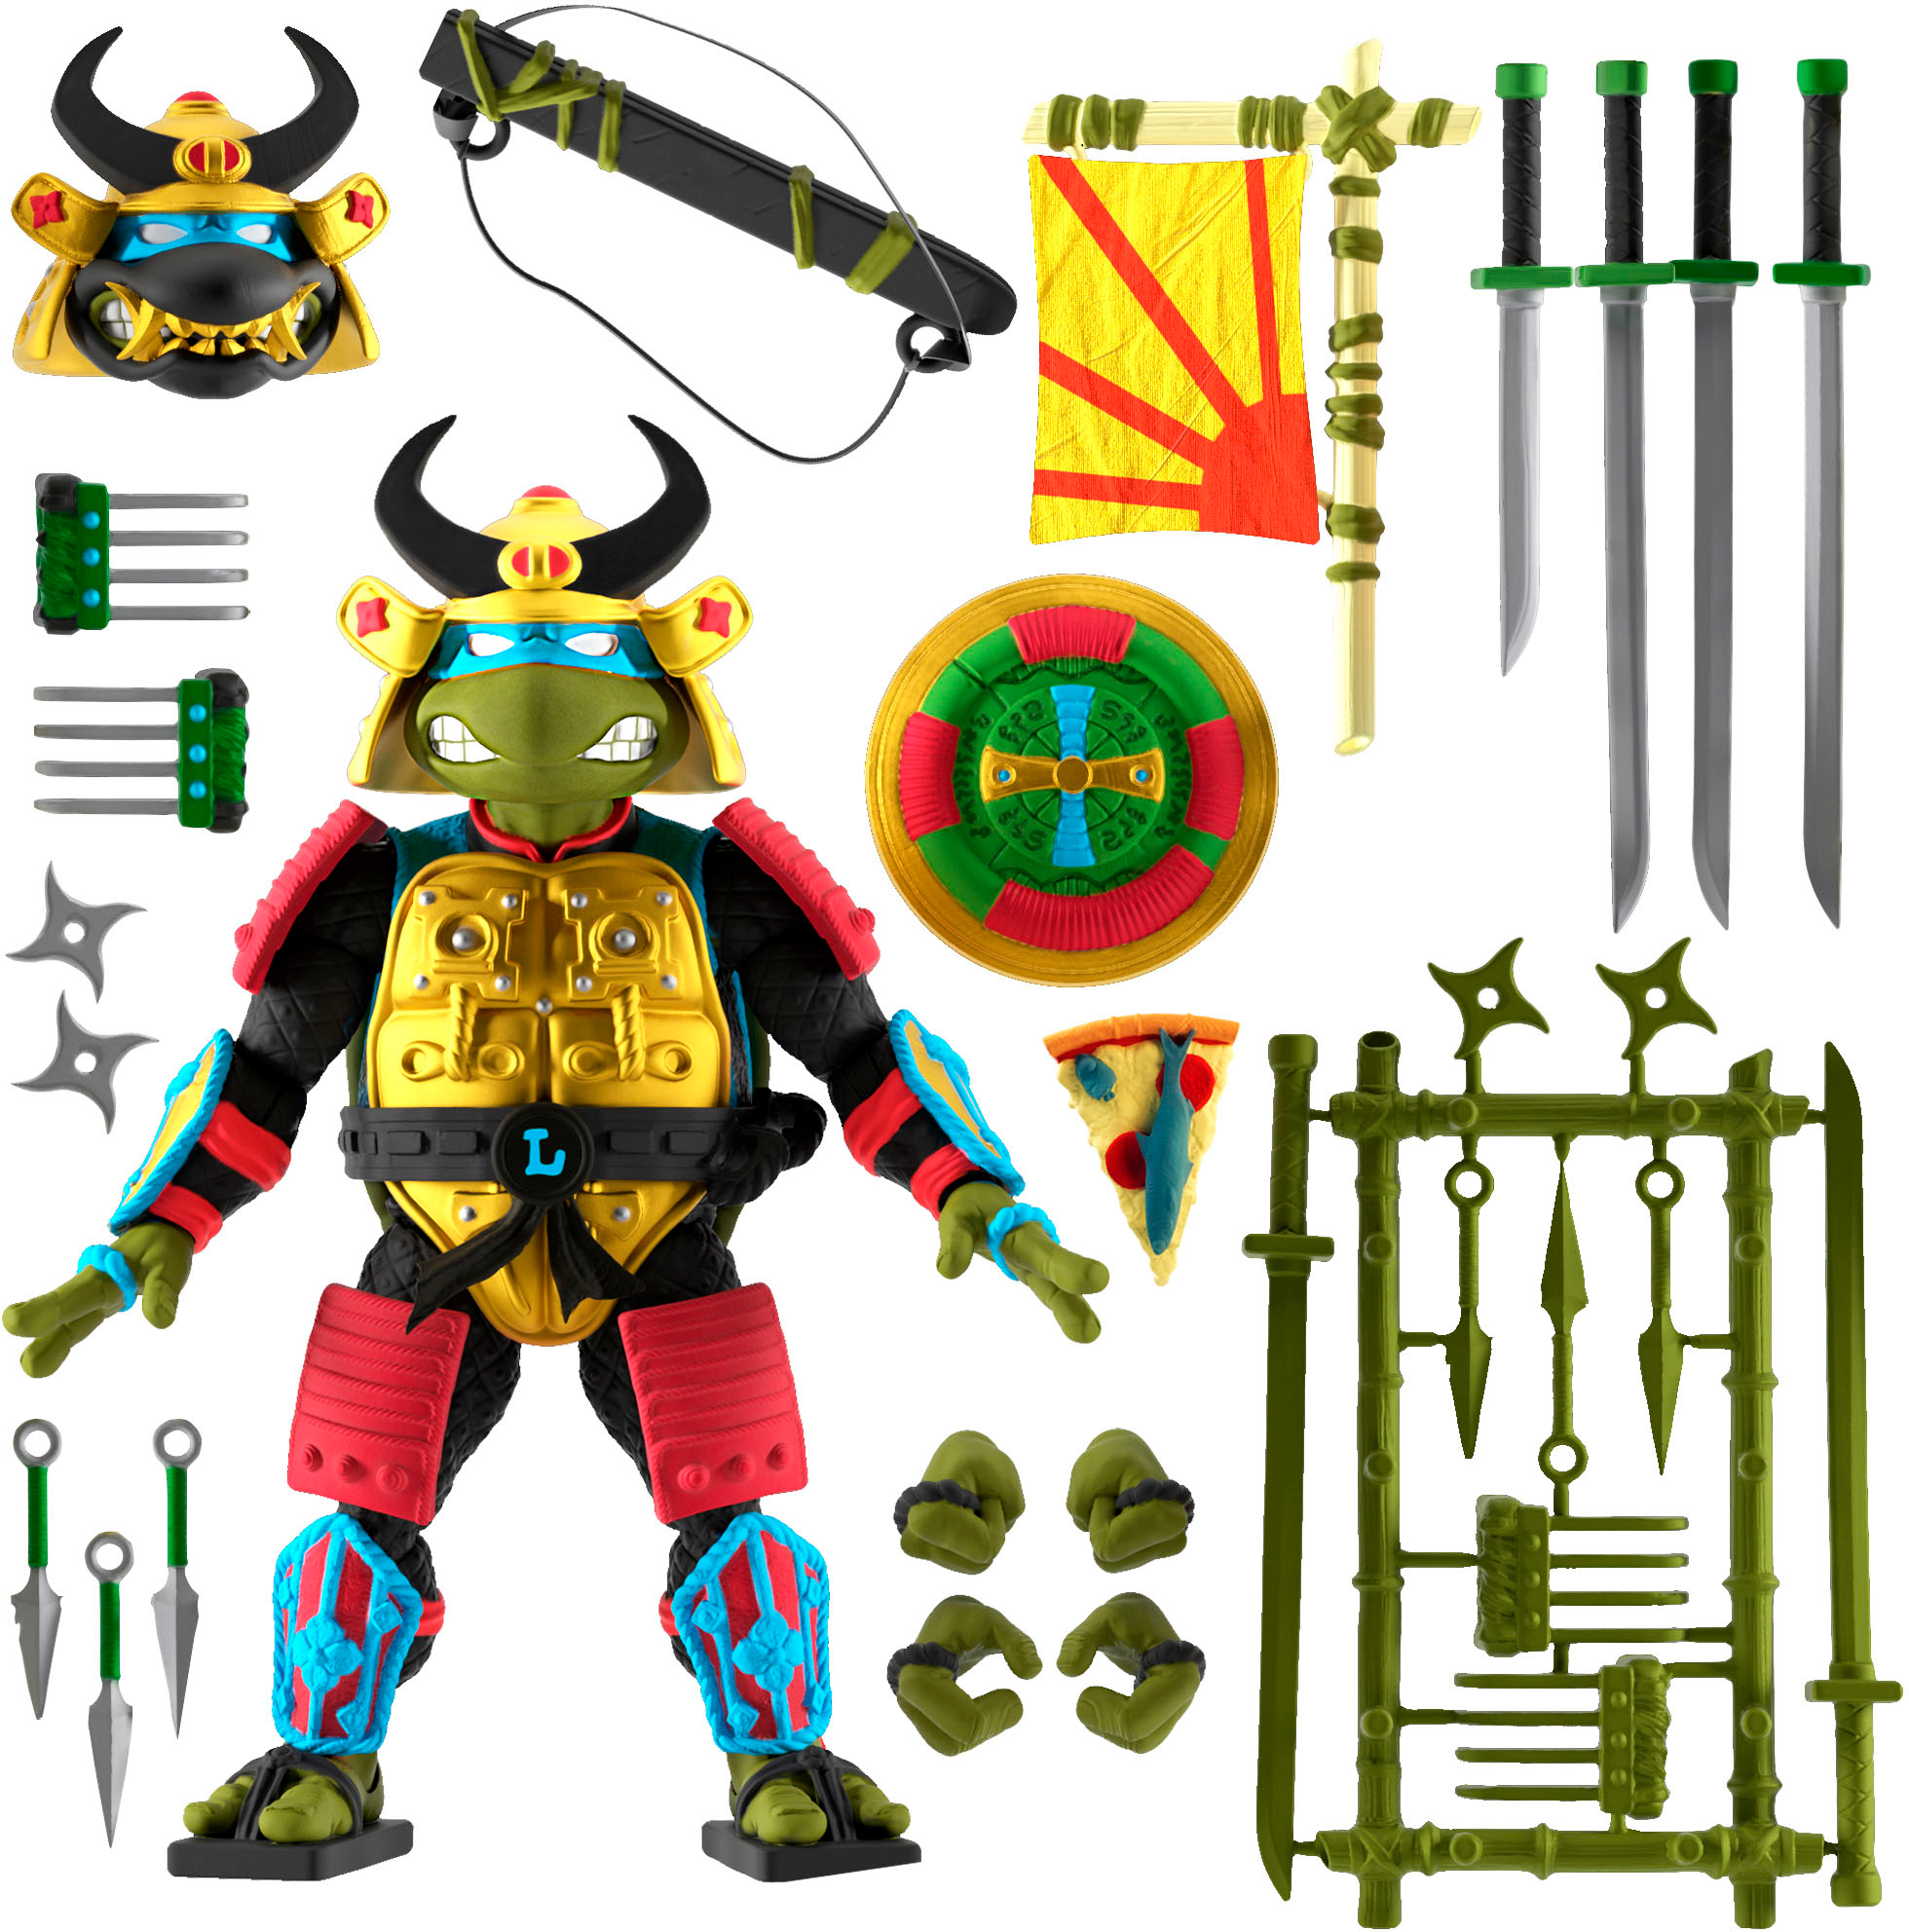 Super7 Tortues Ninja ULTIMATES ! Figurine - Leonardo Merchandise